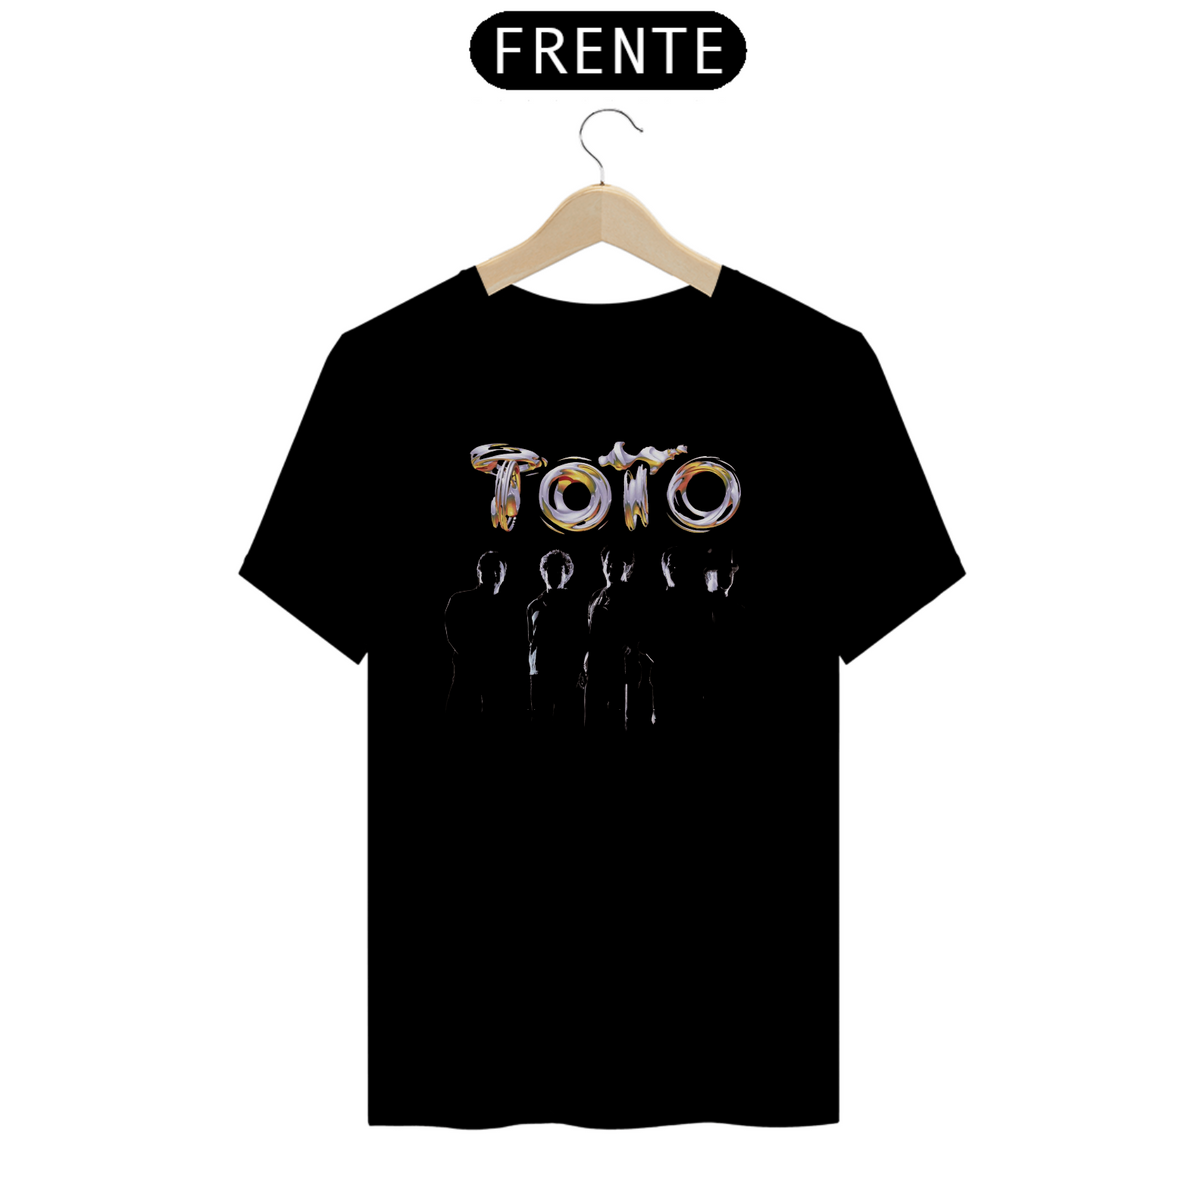 Nome do produto: Toto